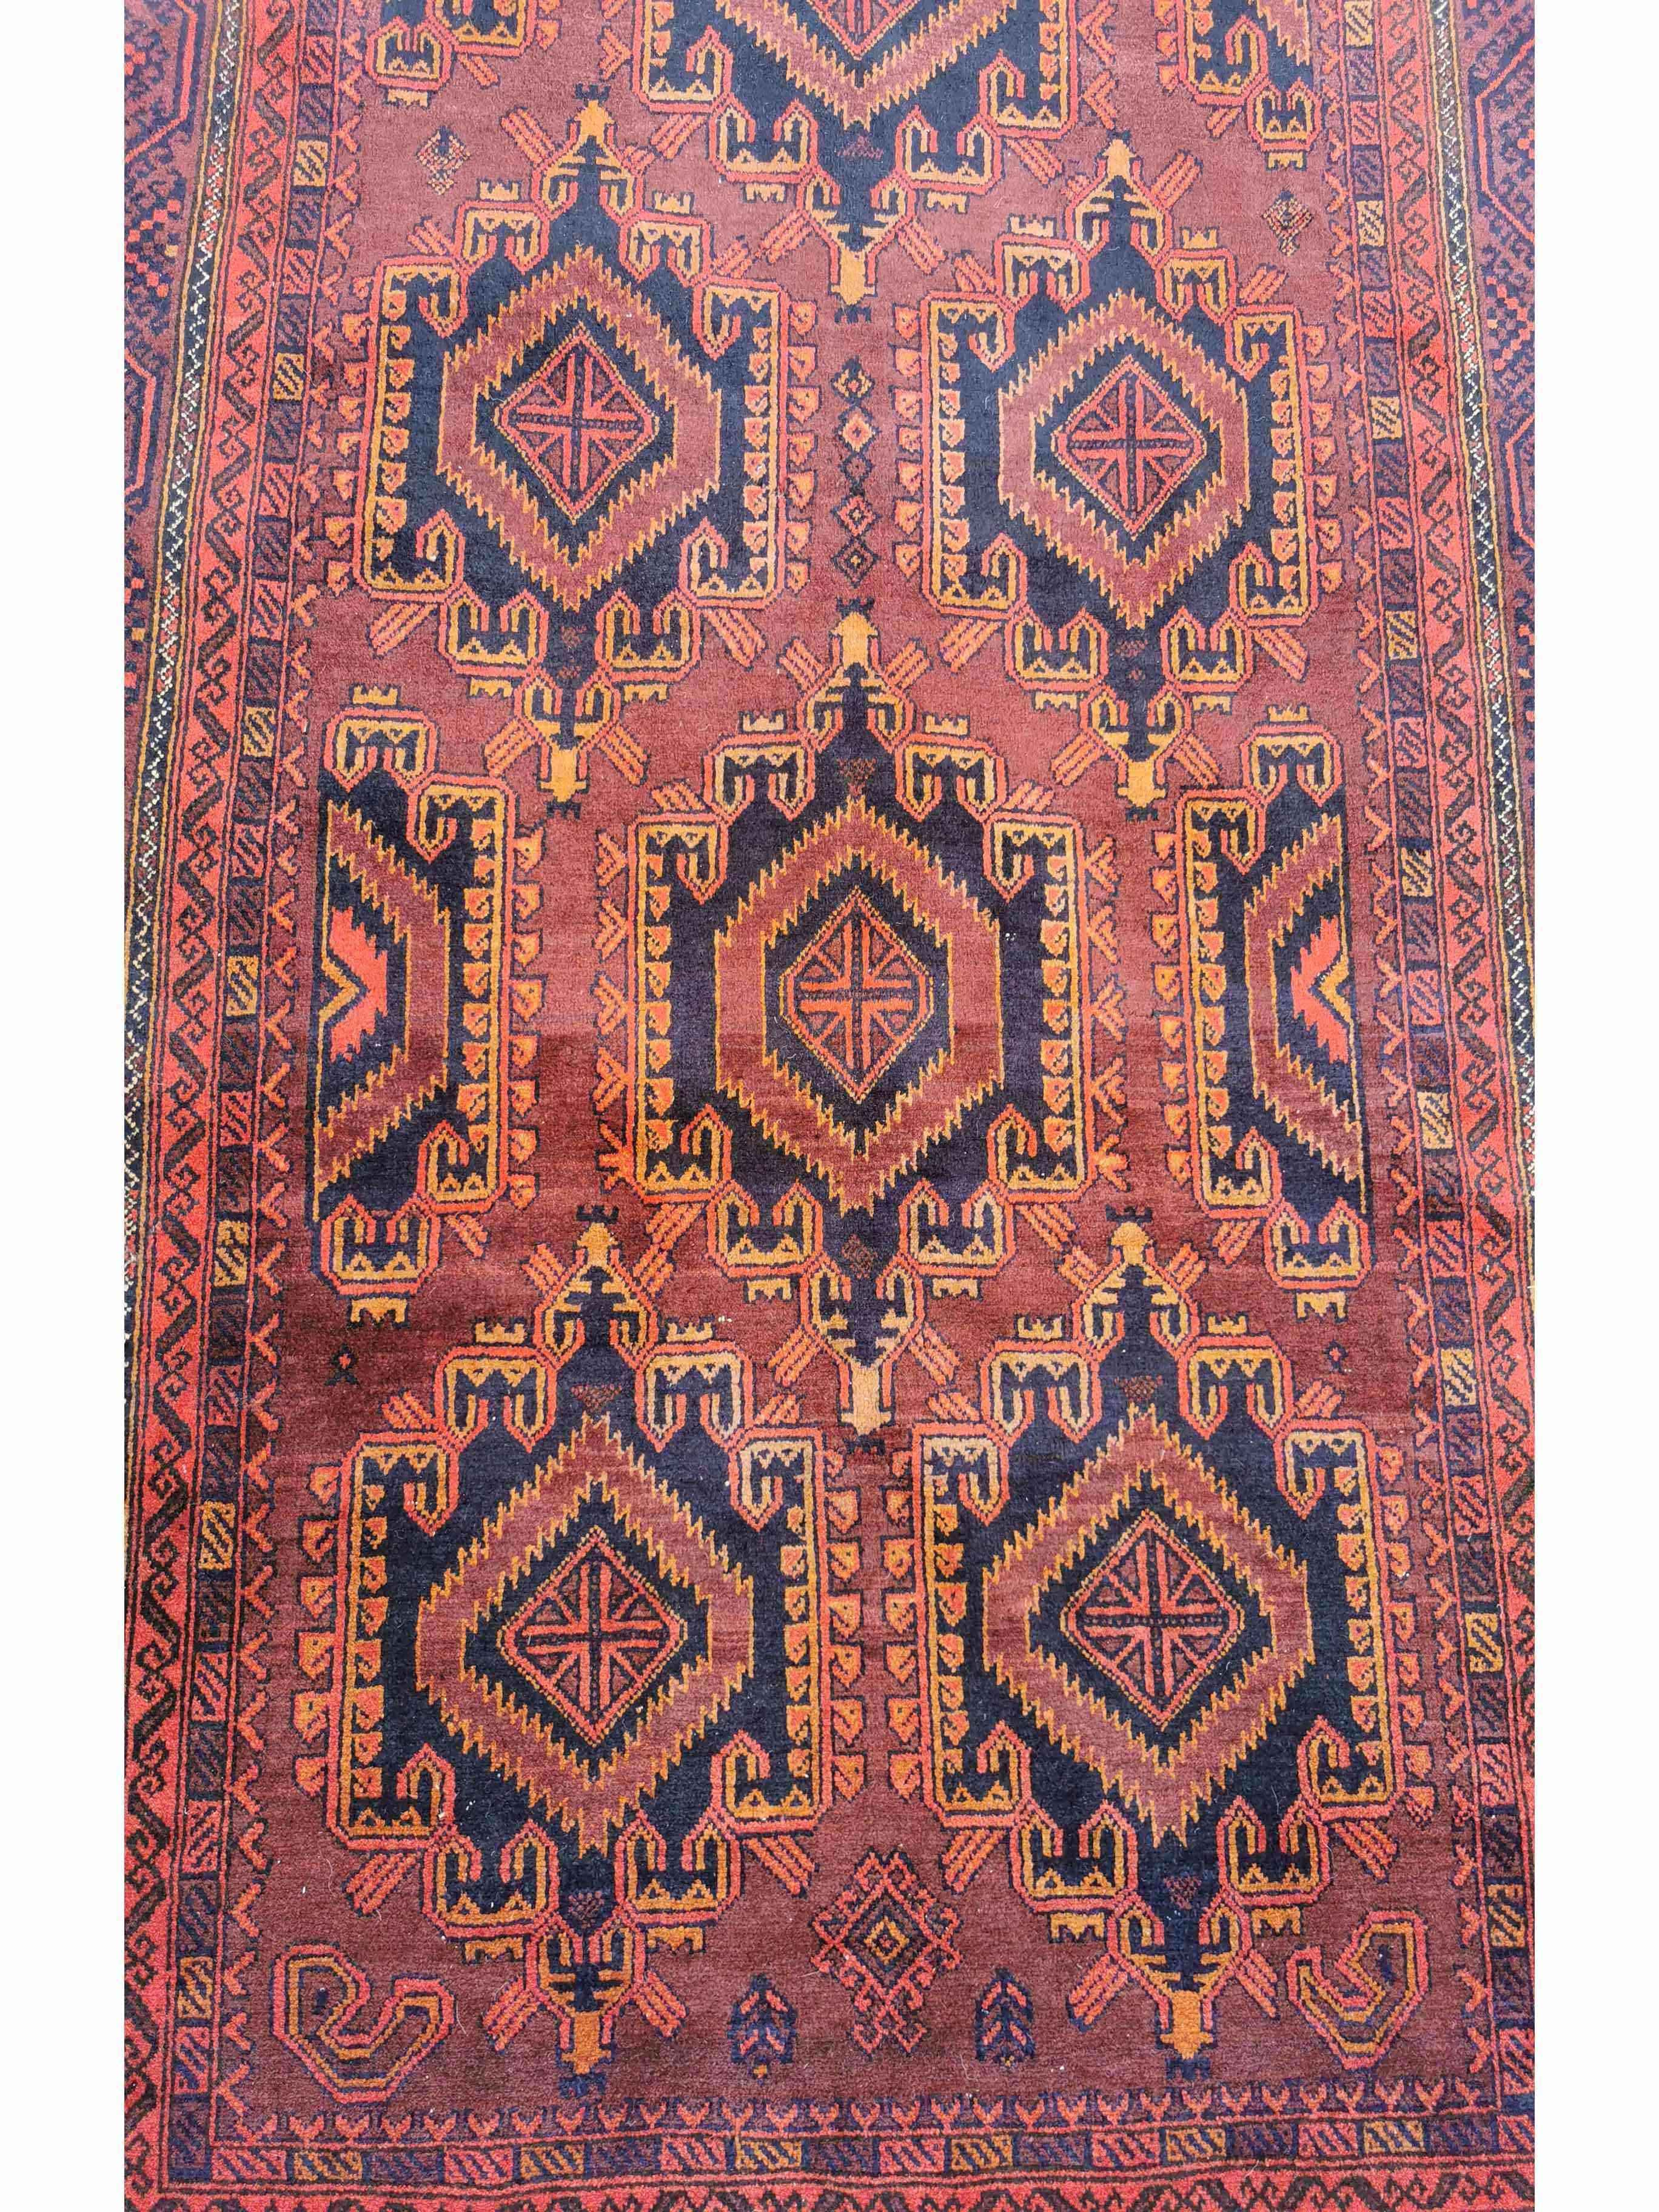 161 x 294 cm Afghan Khan Tribal Brown Rug - Rugmaster